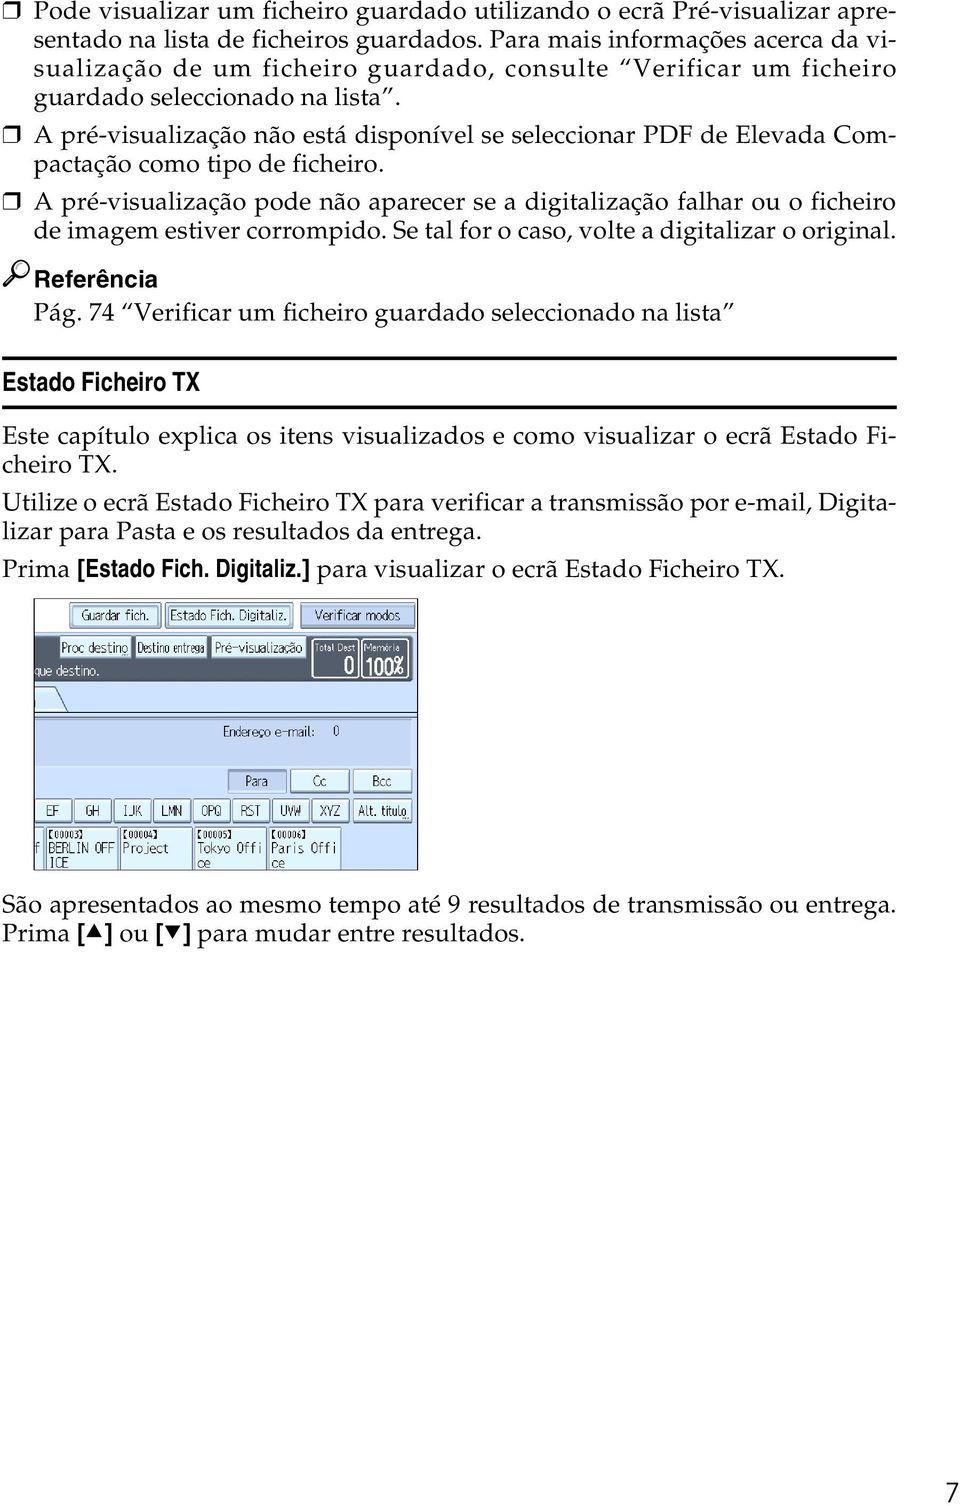 A pré-visualização não está disponível se seleccionar PDF de Elevada Compactação como tipo de ficheiro.